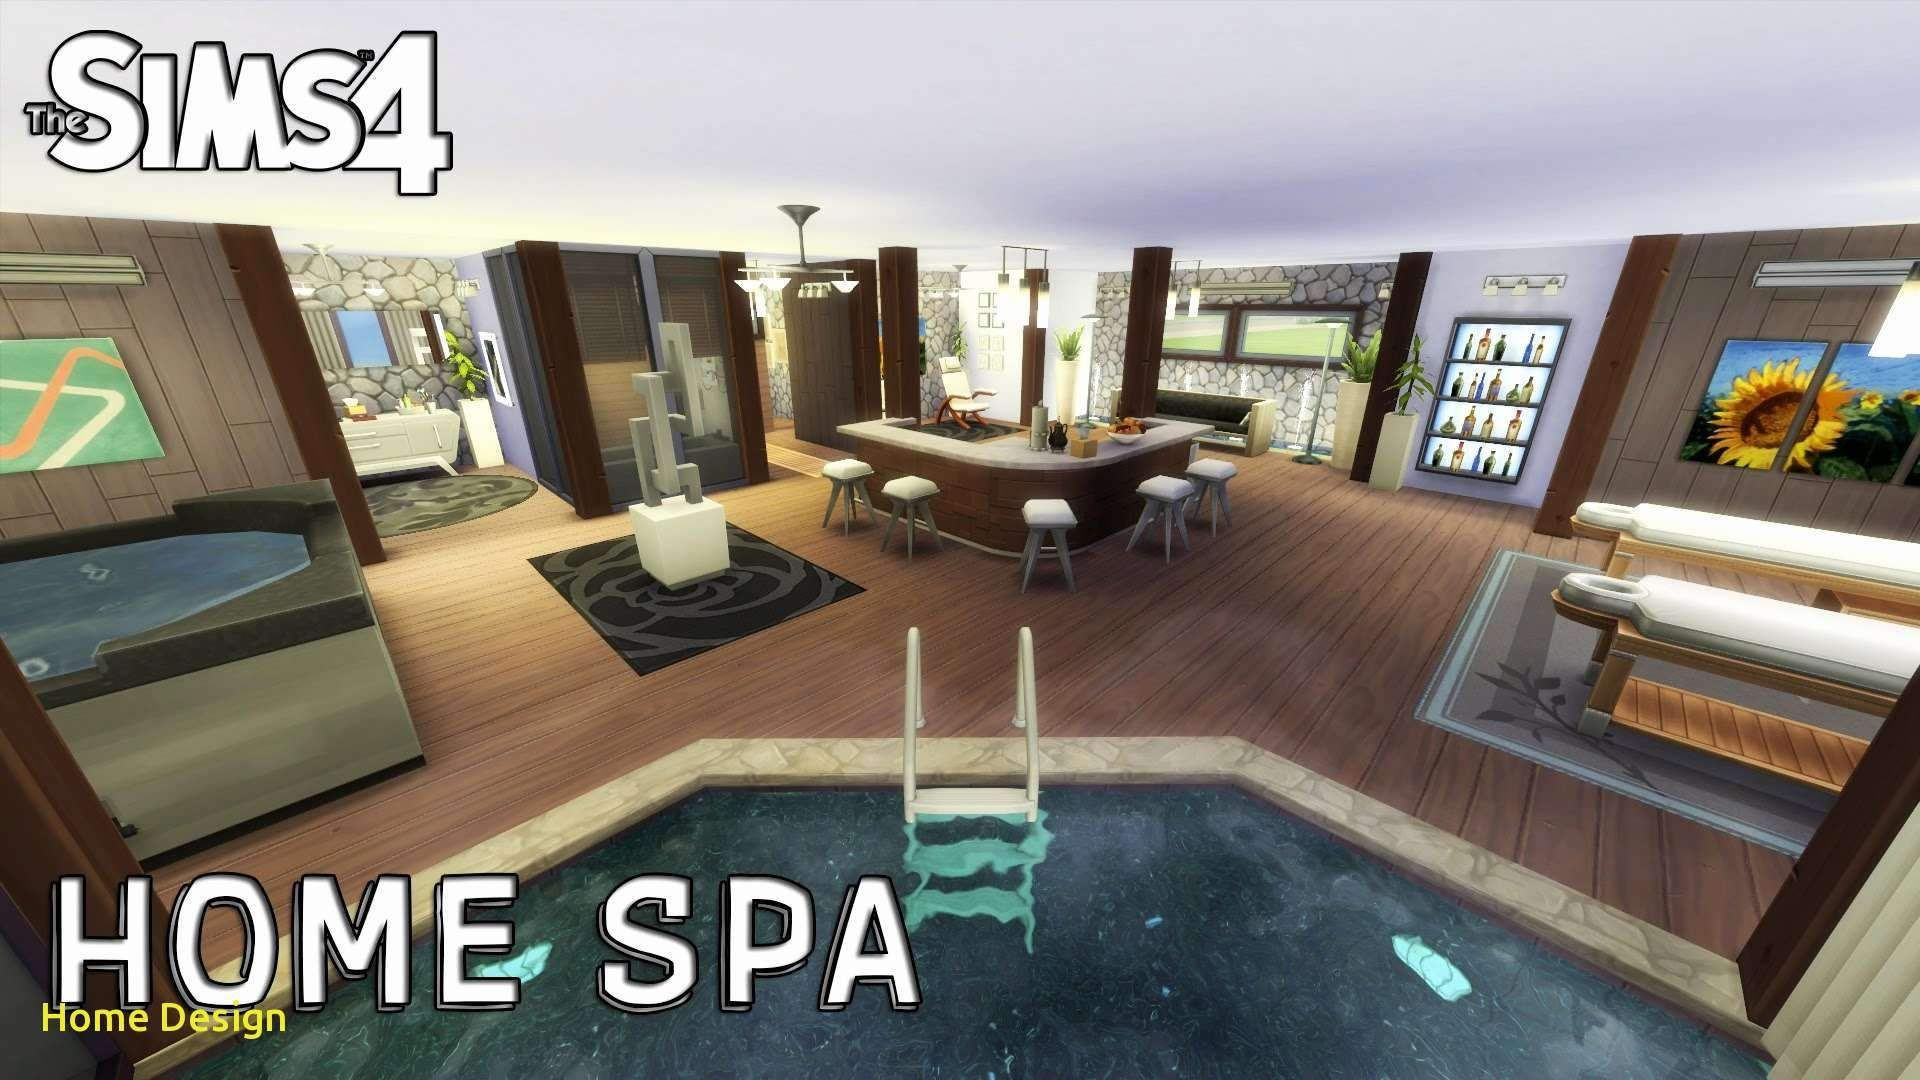 Sims 4 Wohnzimmer Ideen throughout Sims 4 Wohnzimmer Ideen